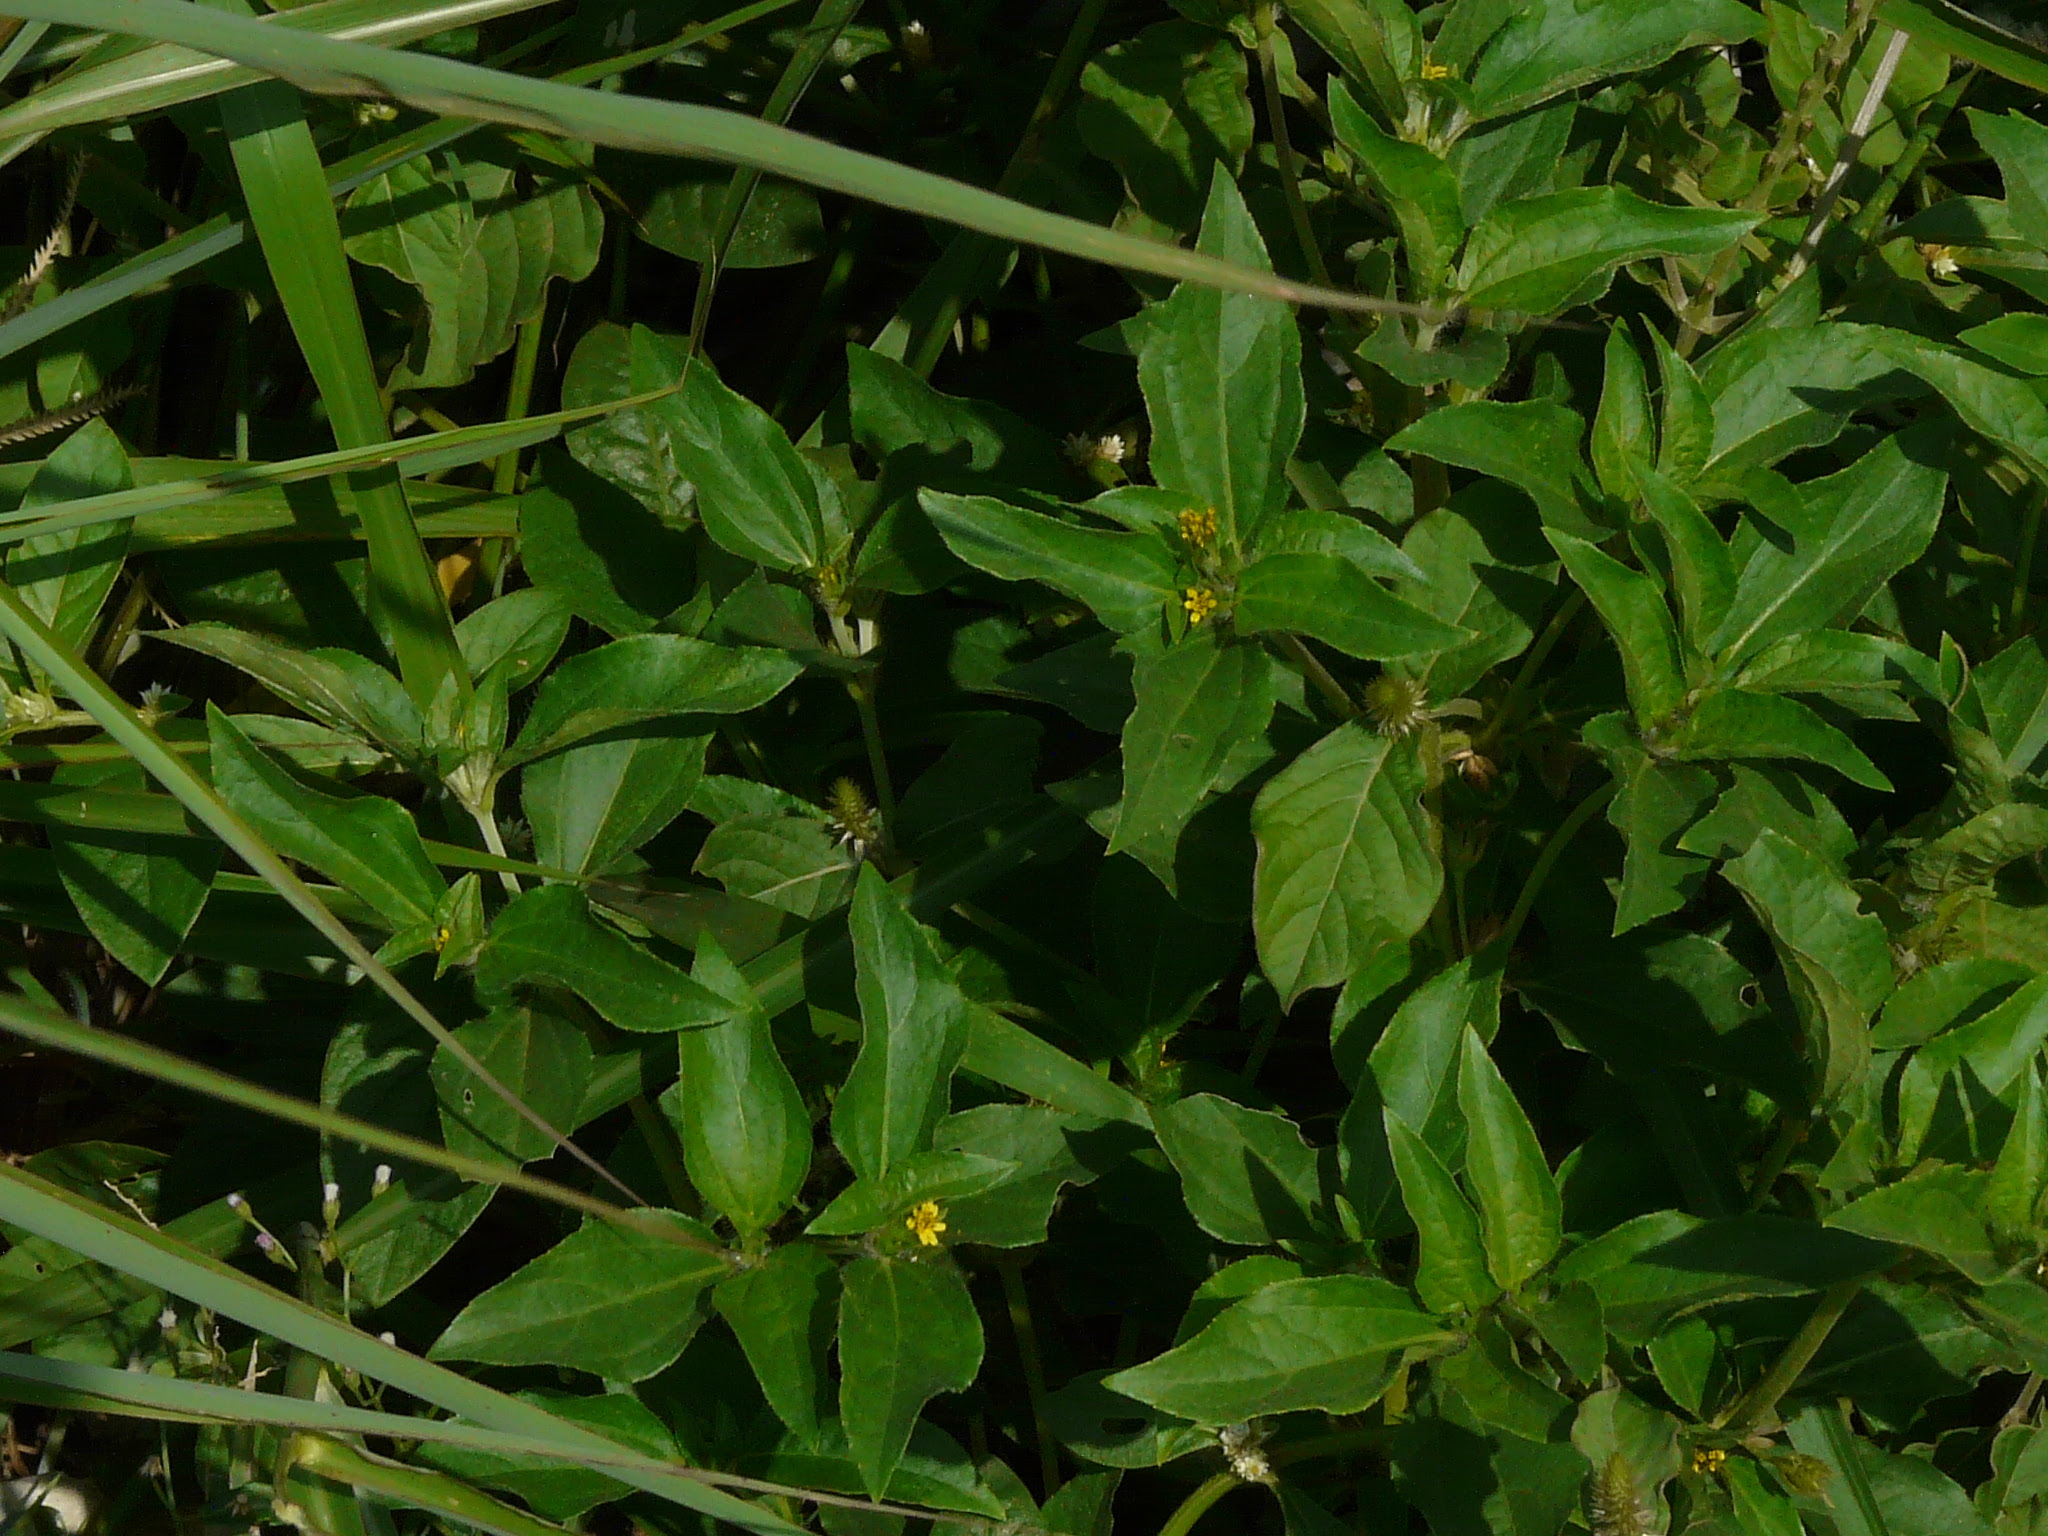 Synedrella nodiflora (L.) Gaertn. ... FOR VALIDATION